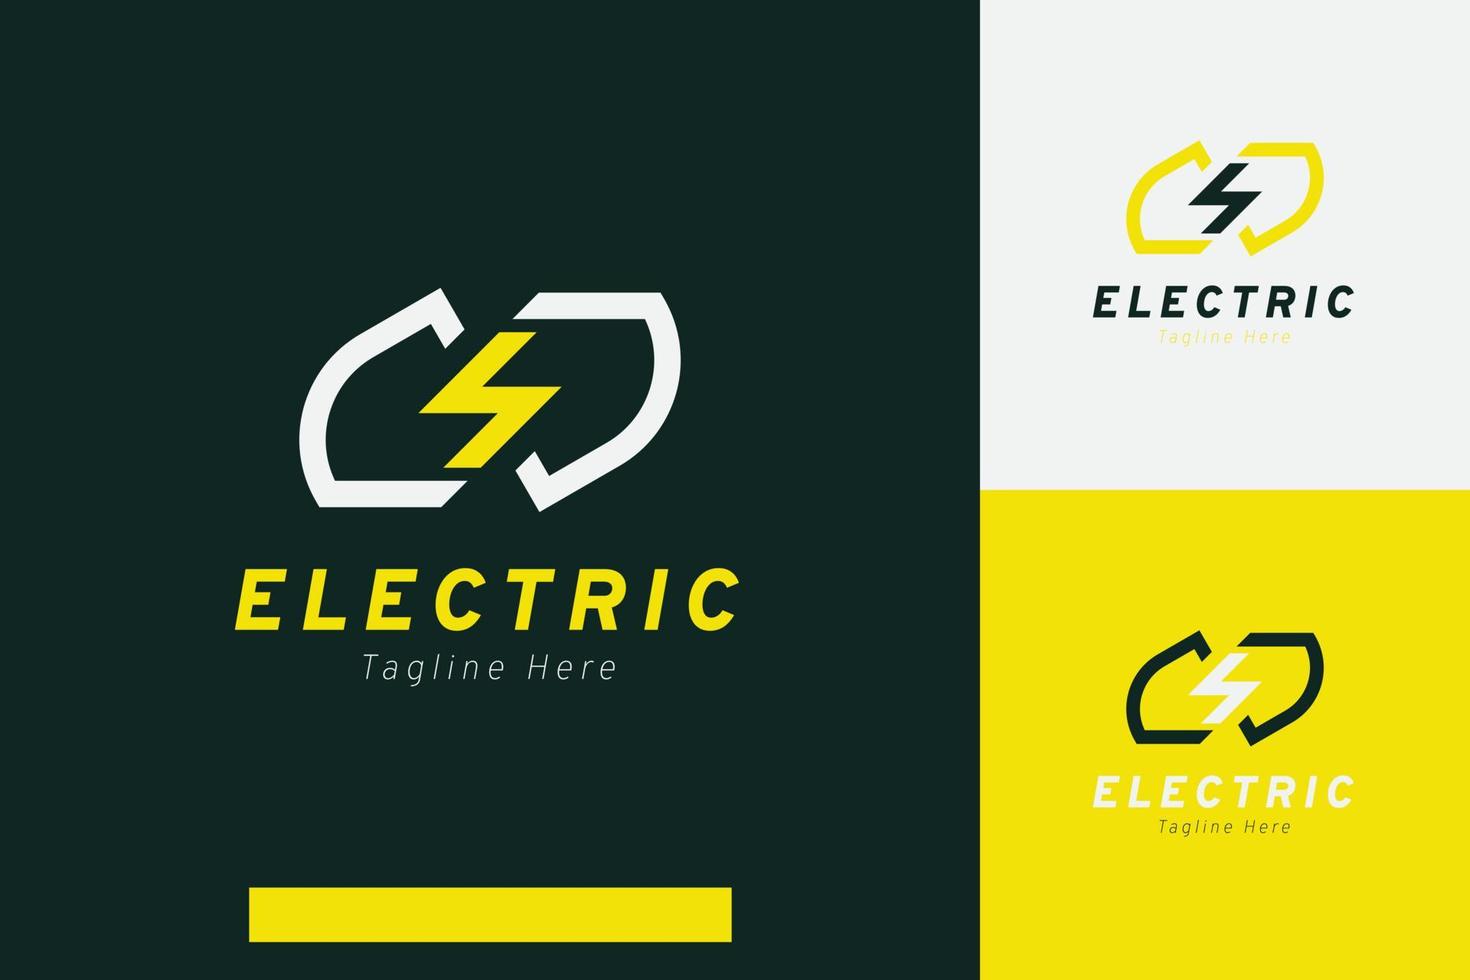 ensemble de foudre tonnerre électrique énergie logo vecteur conception modèles avec différent Couleur modes